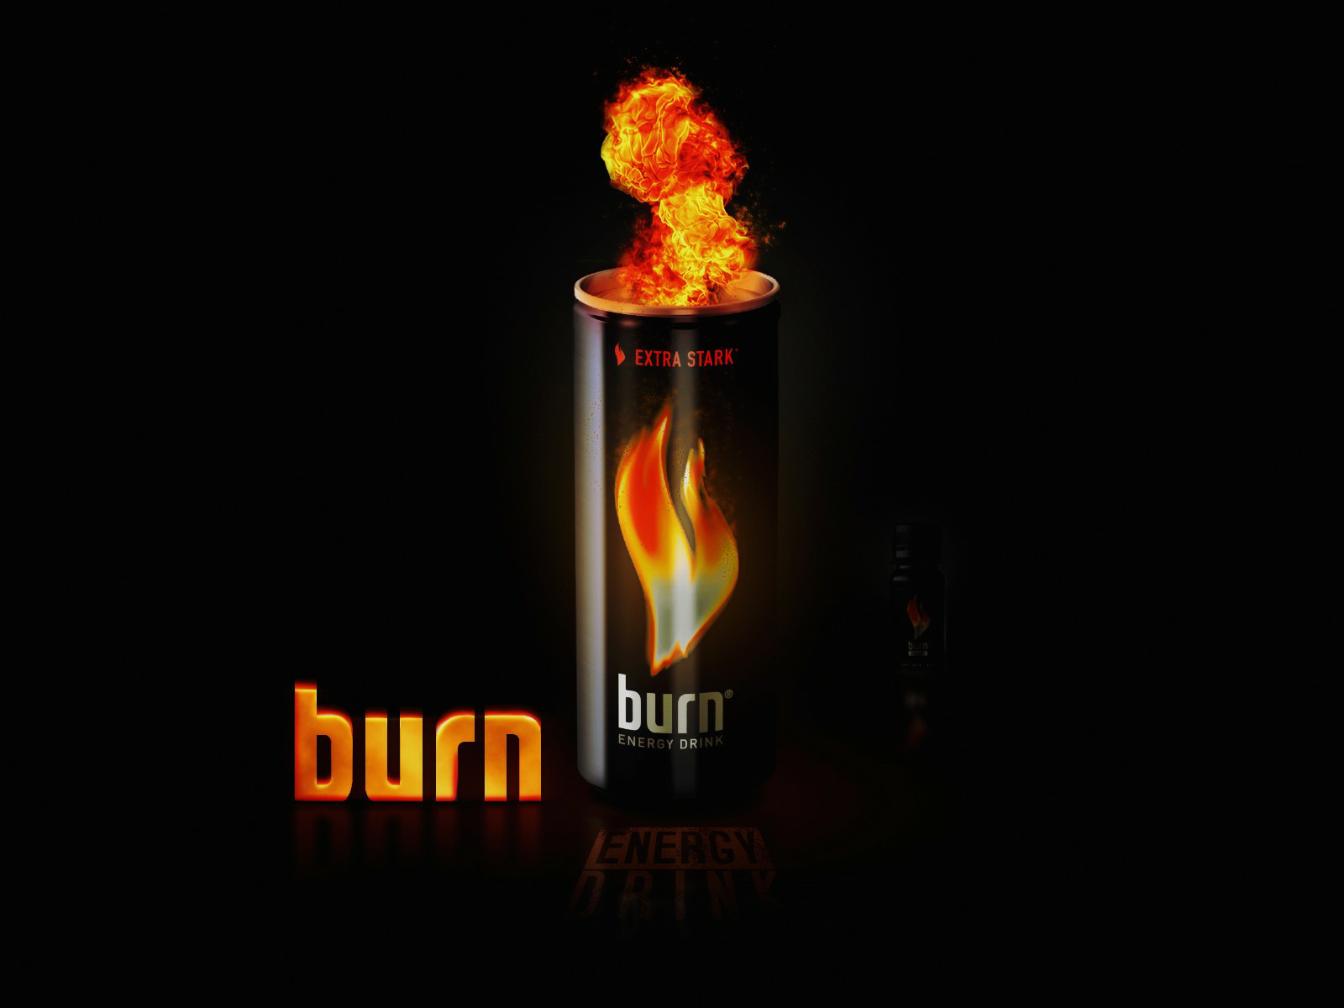 http://3.bp.blogspot.com/-83ewe3fxDTo/T0UYPgZ4ckI/AAAAAAAAHh0/PV95g-cTGHs/s1600/Energy-Drink-Burn-HD-WALLPAPER1123.jpg